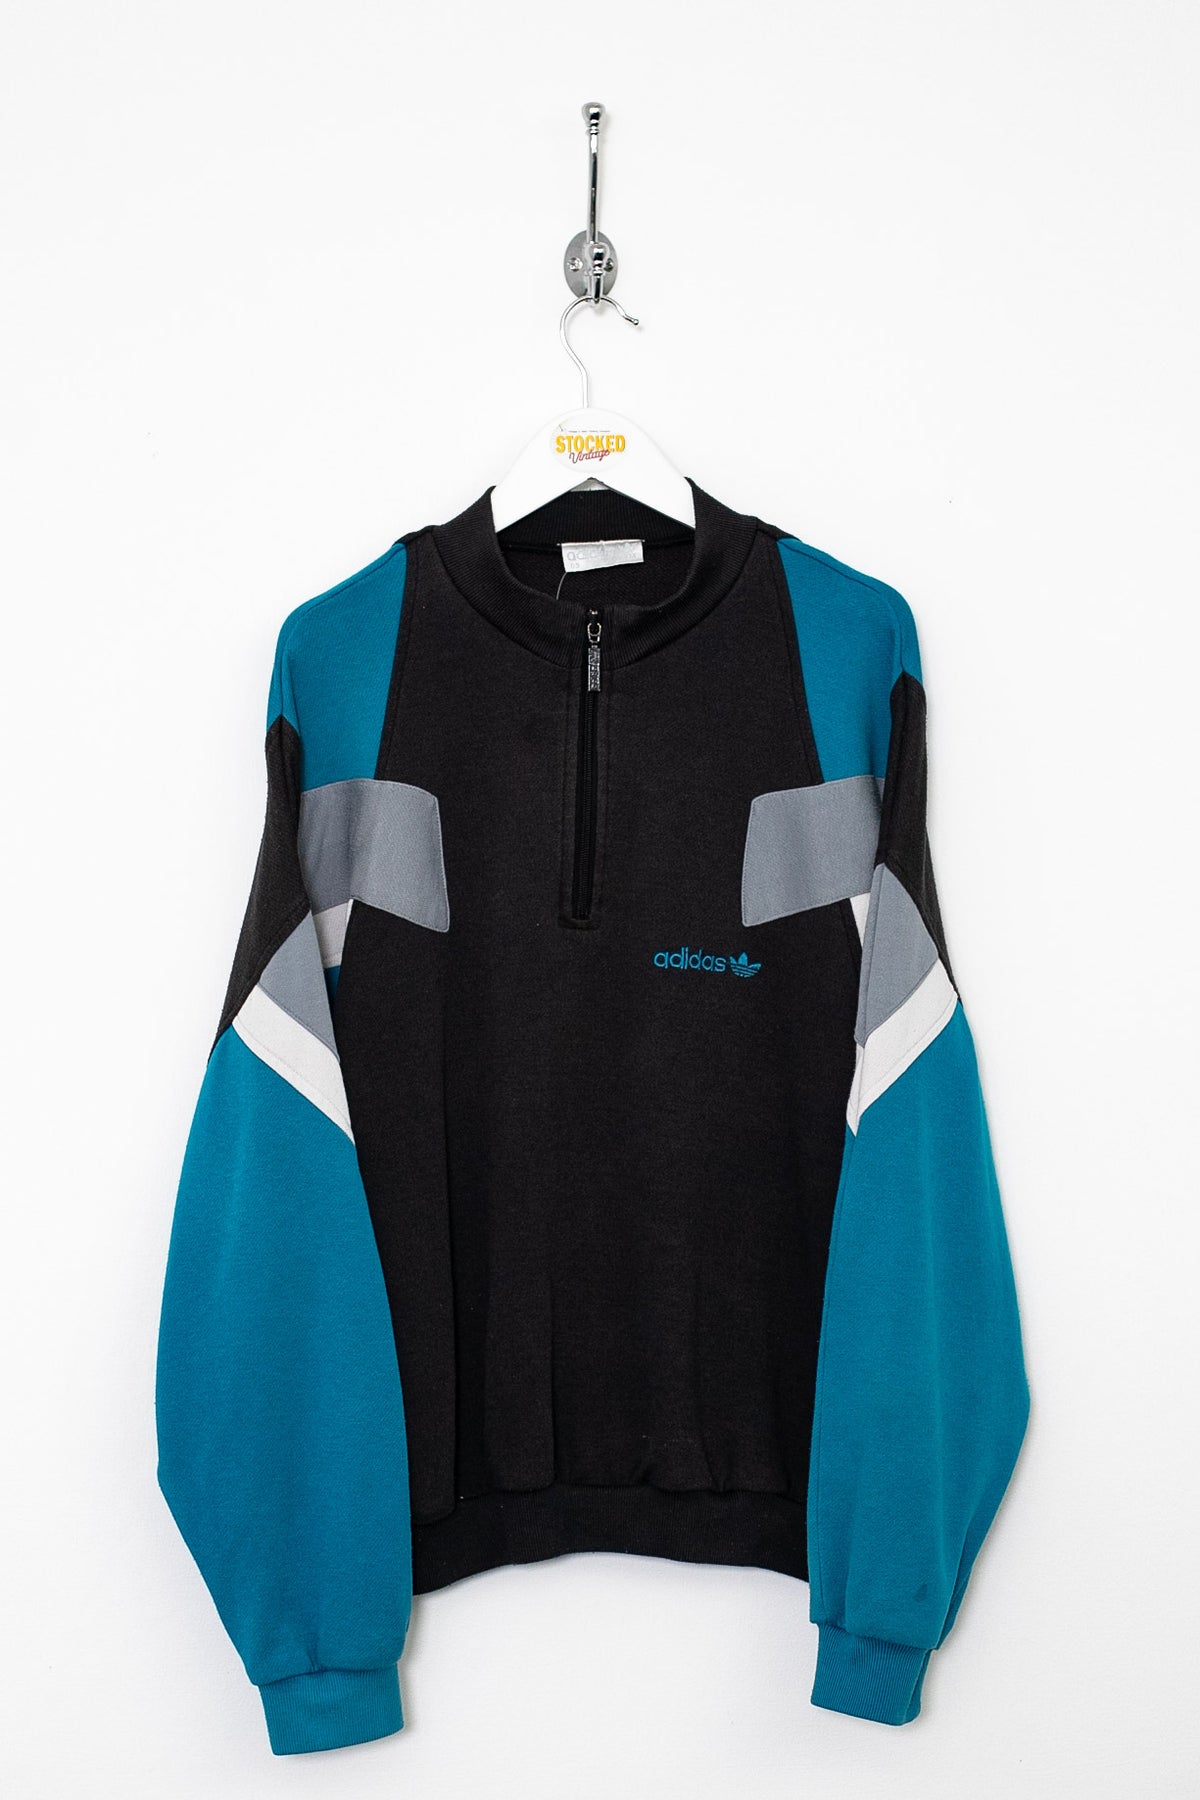 90s Adidas 1/4 Zip Sweatshirt (L)